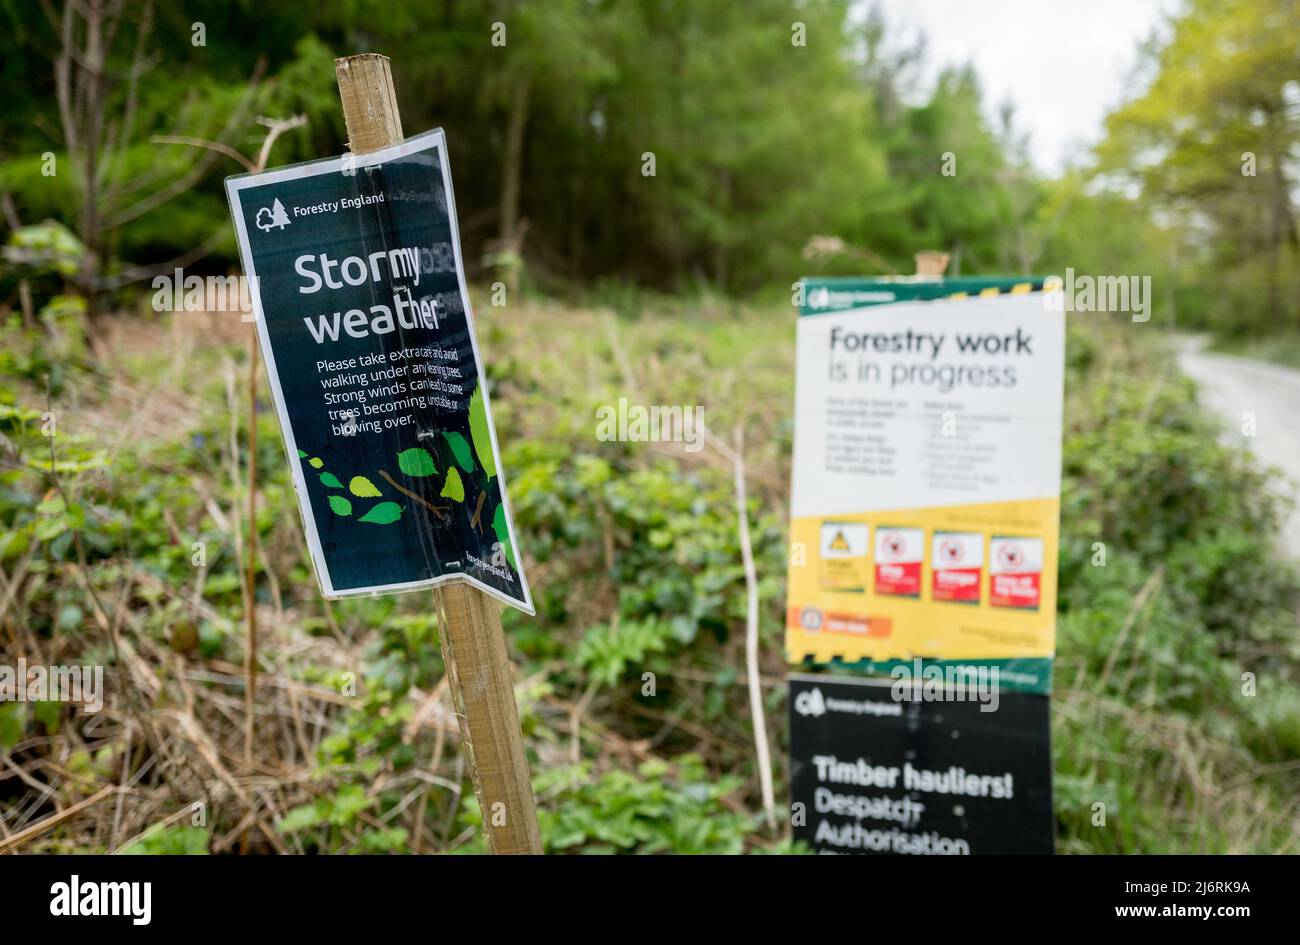 Forestry England Warnhinweis über stürmisches Wetter, der Wanderer auf  besondere Vorsicht beim Wandern im Wald hinweist Stockfotografie - Alamy